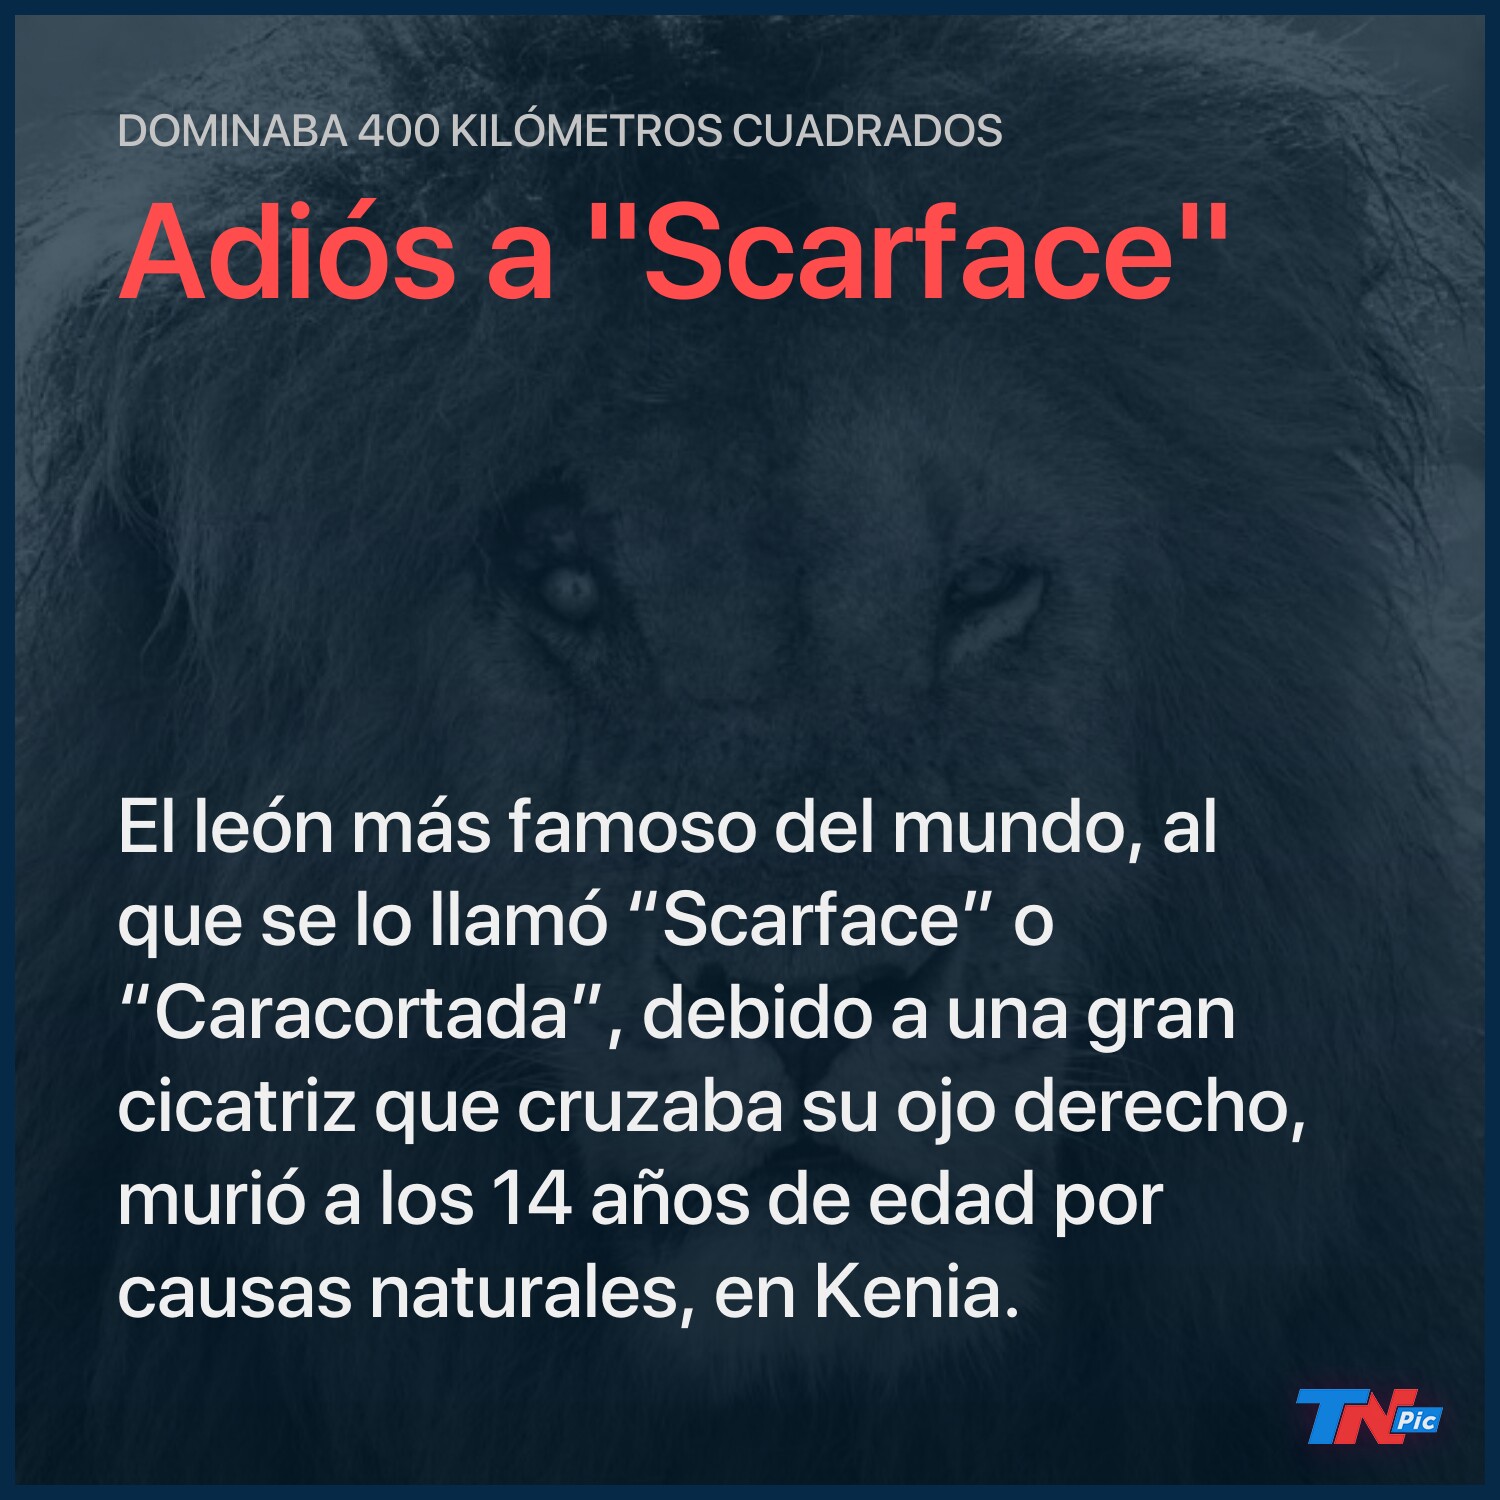 Murió “Scarface”, el león más famoso del África | TN